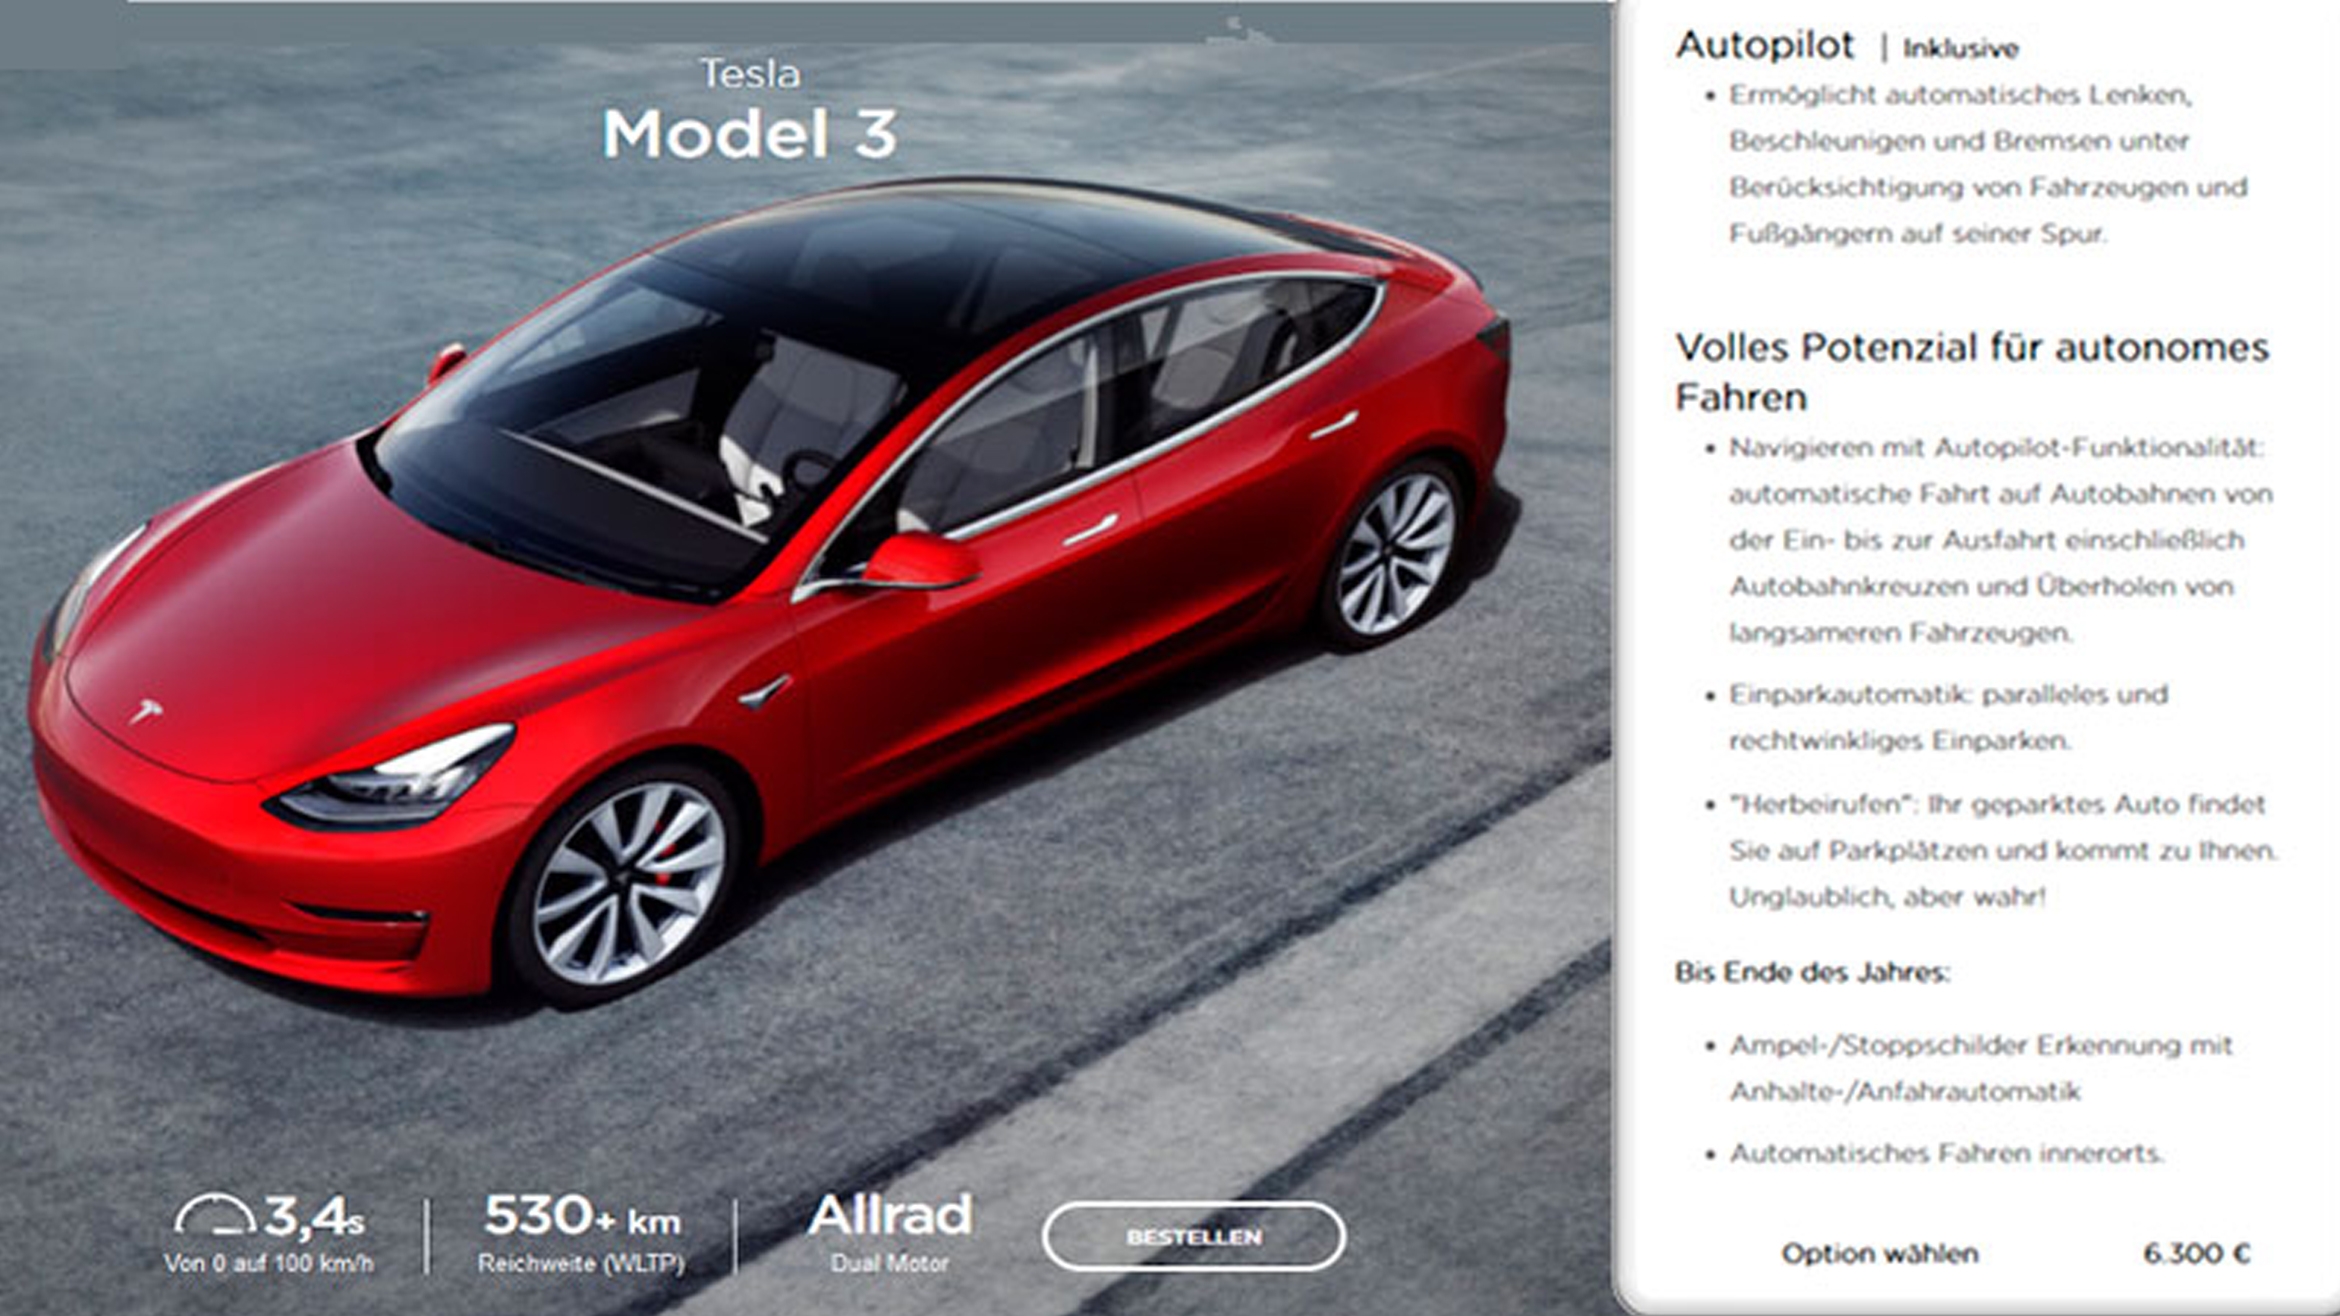 Aussagen auf der Tesla-Homepage zum autonomen Fahren, zusammengestellt von der wettbewerbszentrale –